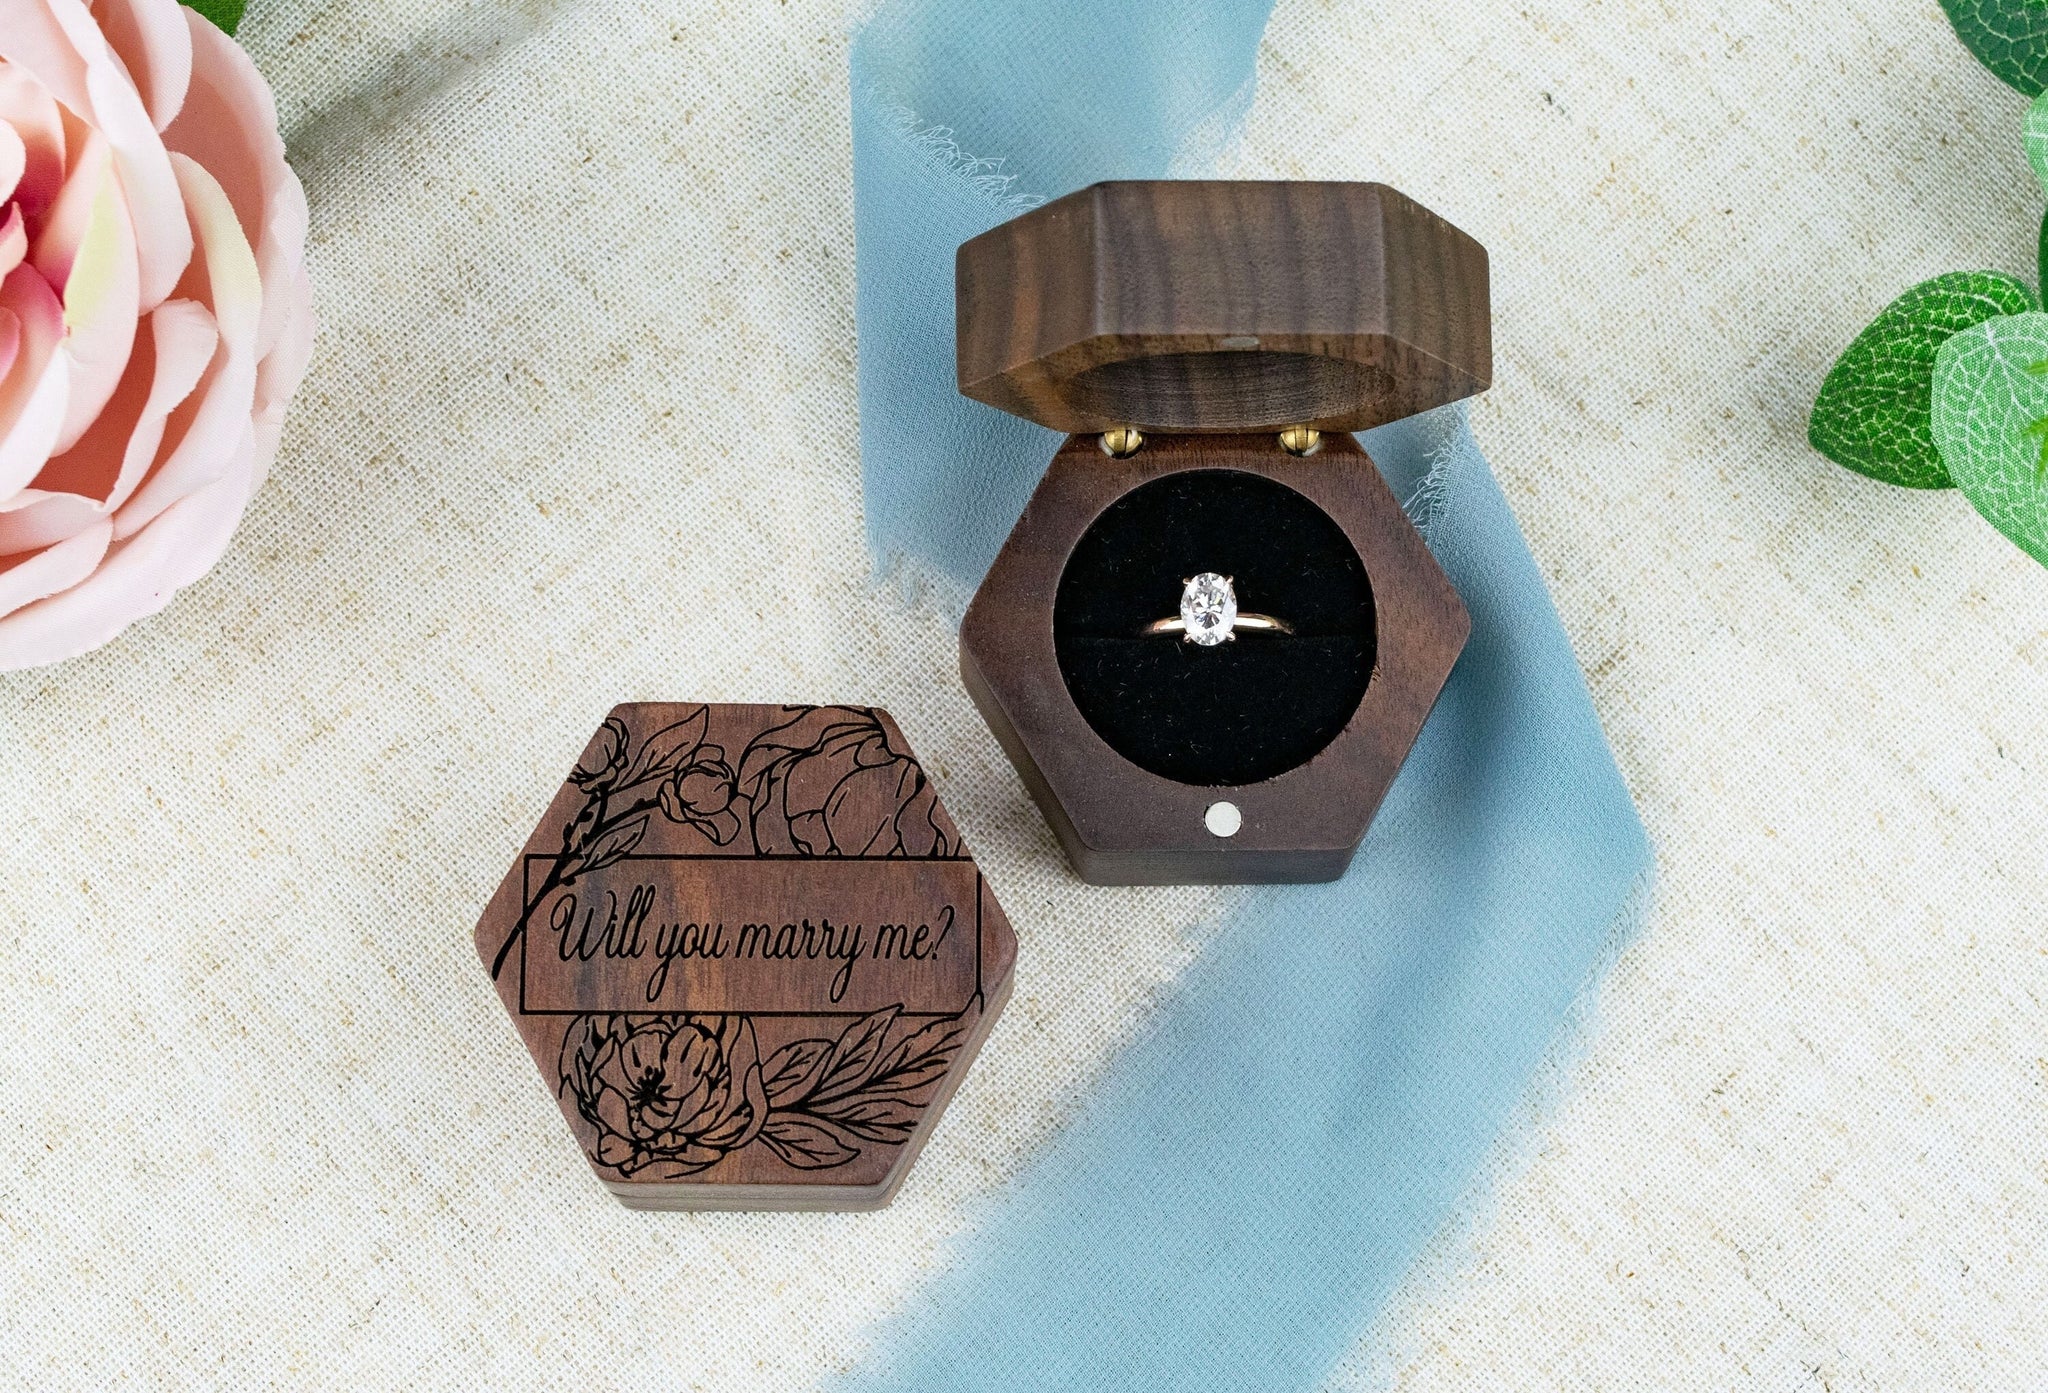 Personalised Wedding Ring Box - Ring Bearer Box - Proposal Ring Box